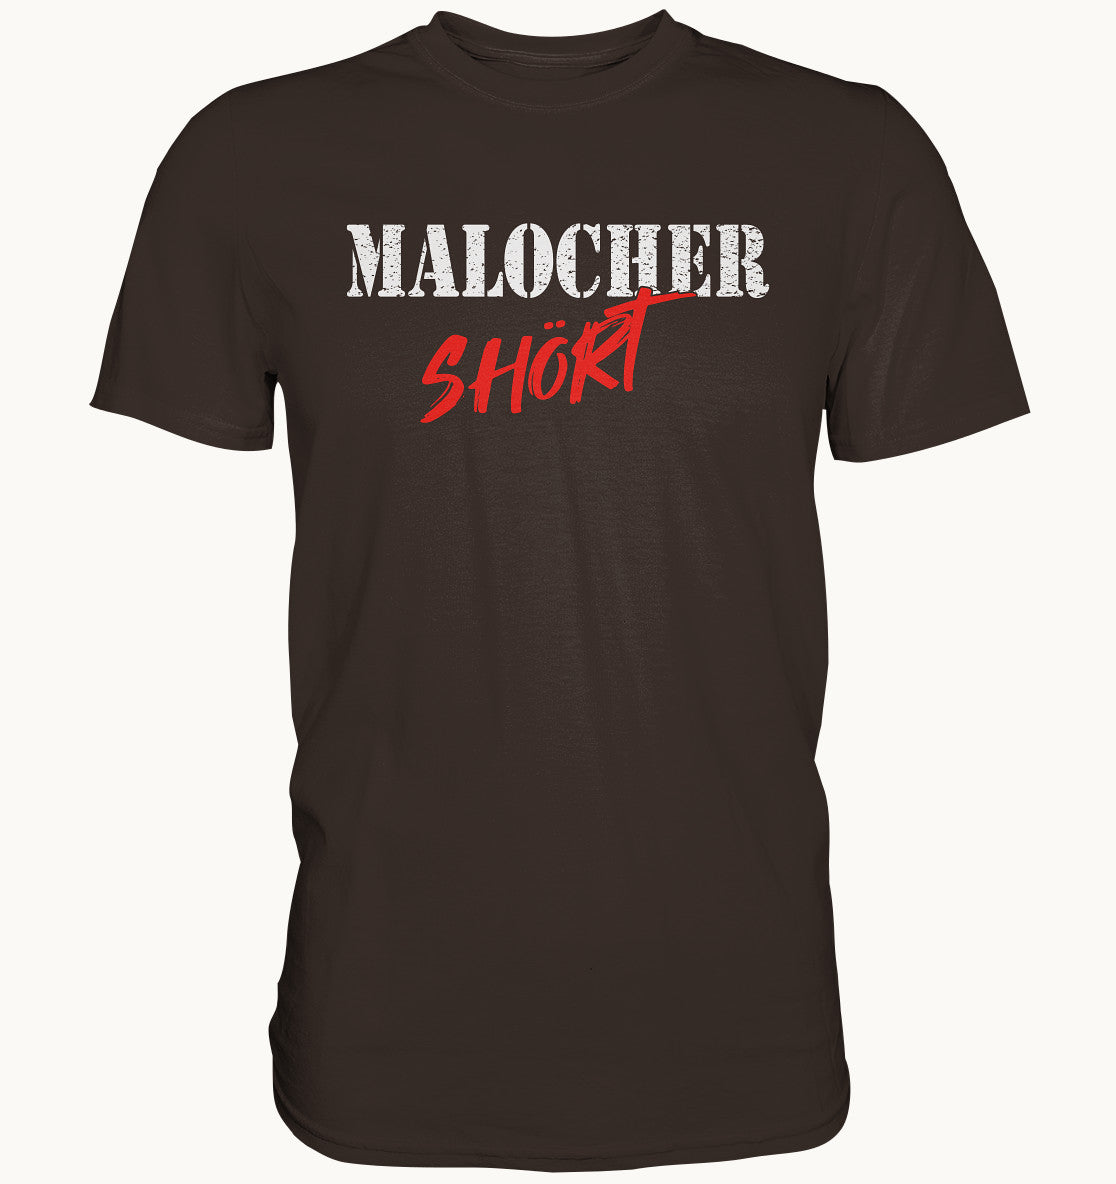 Malocher Shört - Premium Shirt